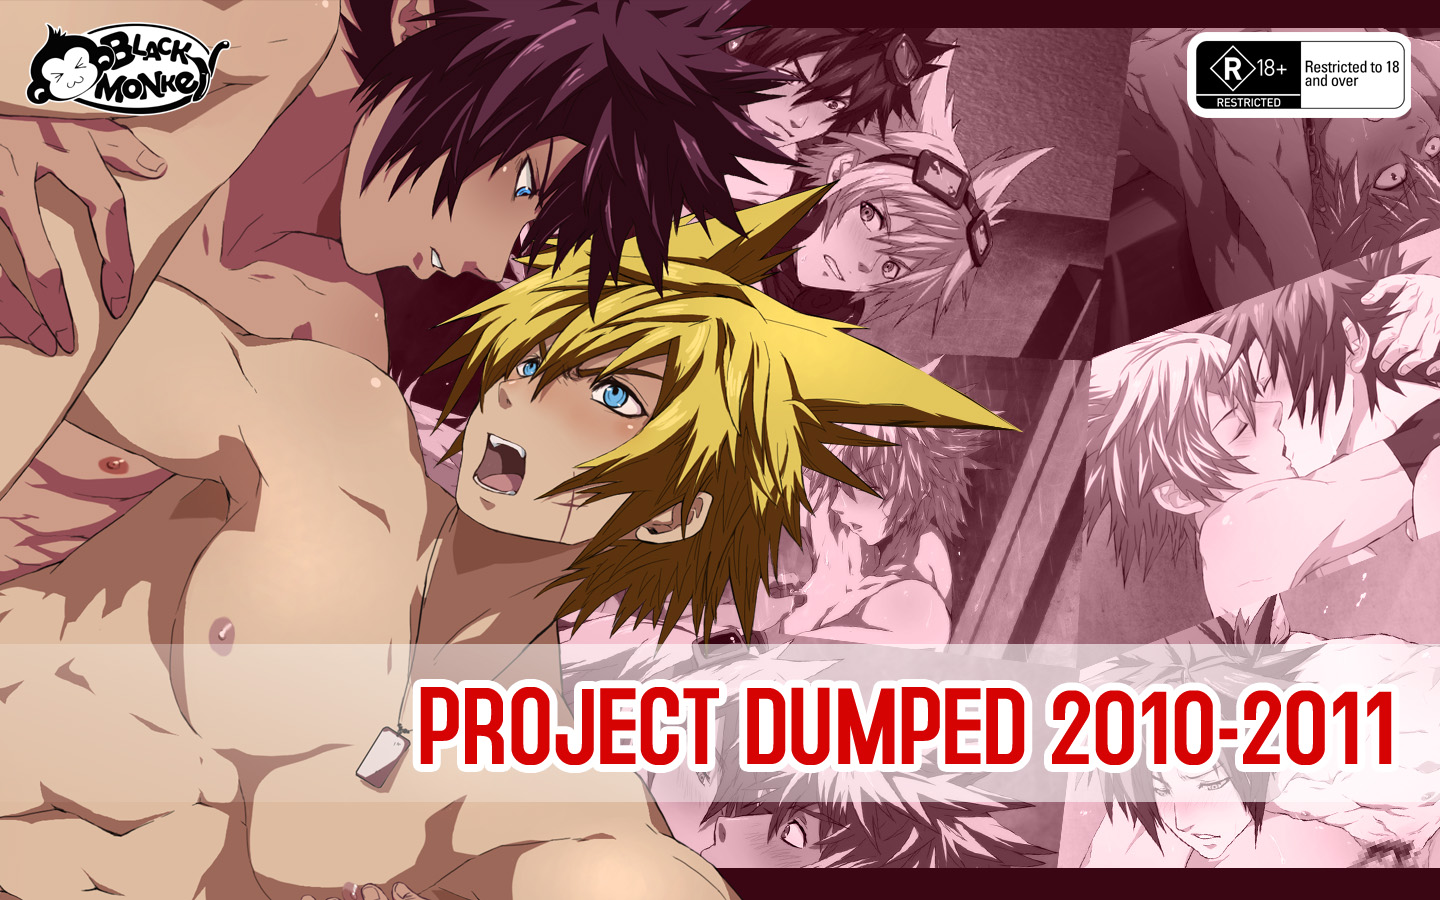 Black Monkey Pro Project Dumped 2010-2011